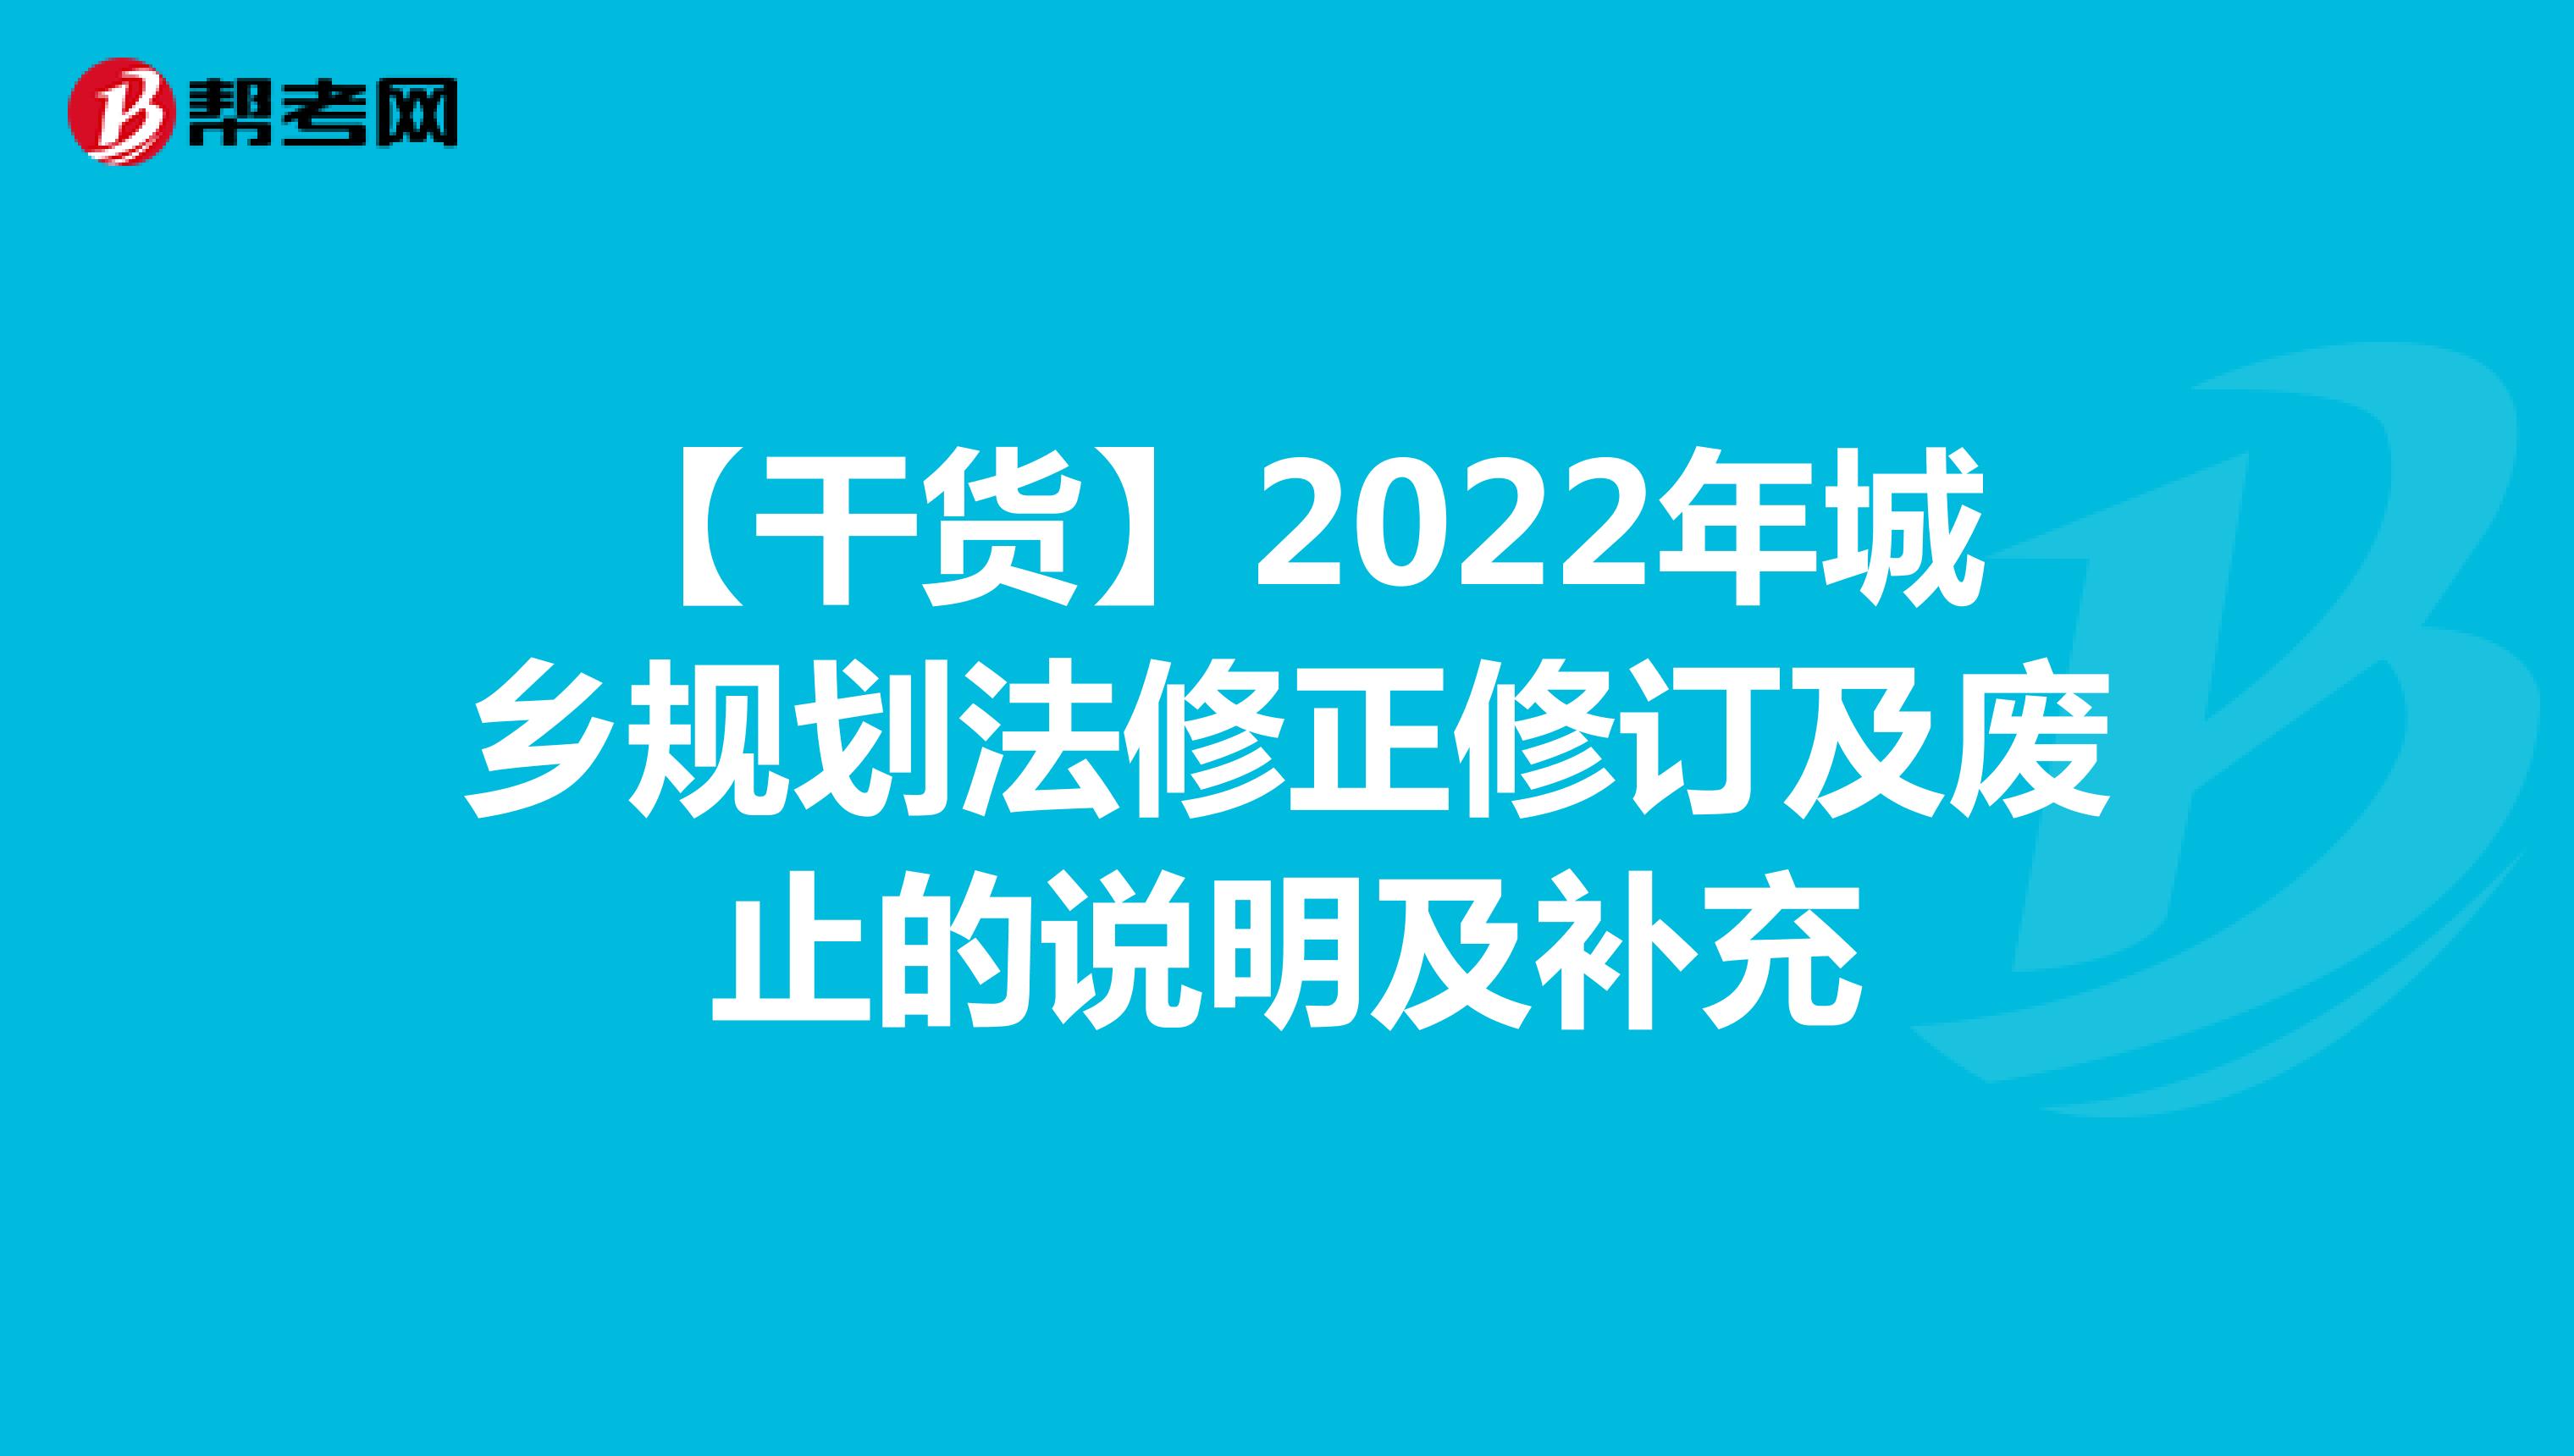 【干货】2022年城乡规划法修正修订及废止的说明及补充